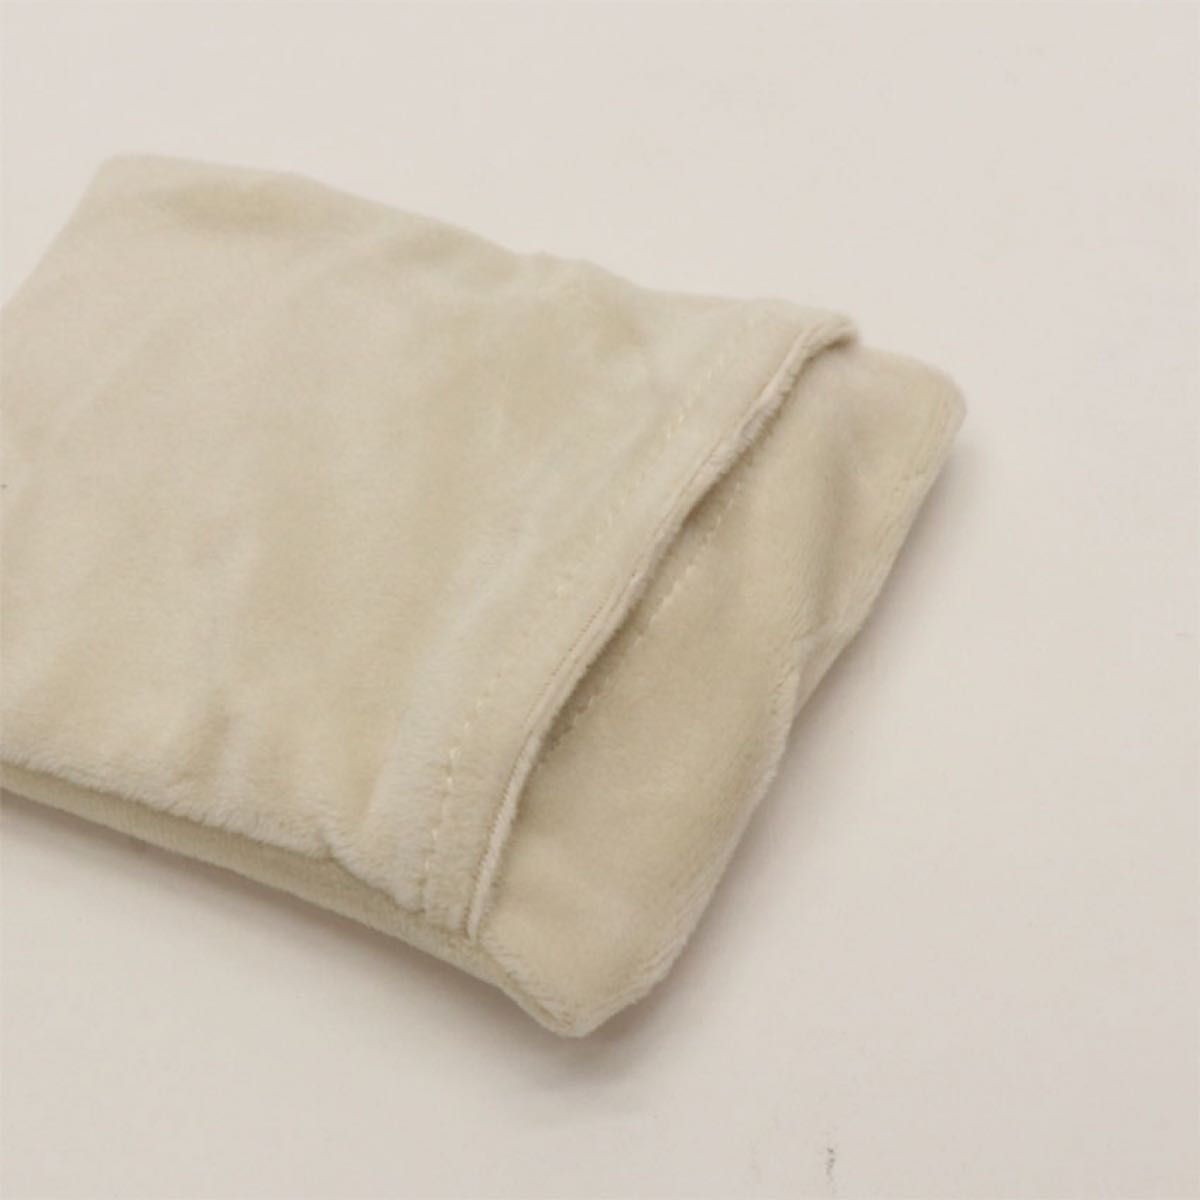 繰り返し使える ポケットカイロ 2color 送料無料 温感 瞬間に温感 エコ 再利用可能 節電 エコロジー 防寒